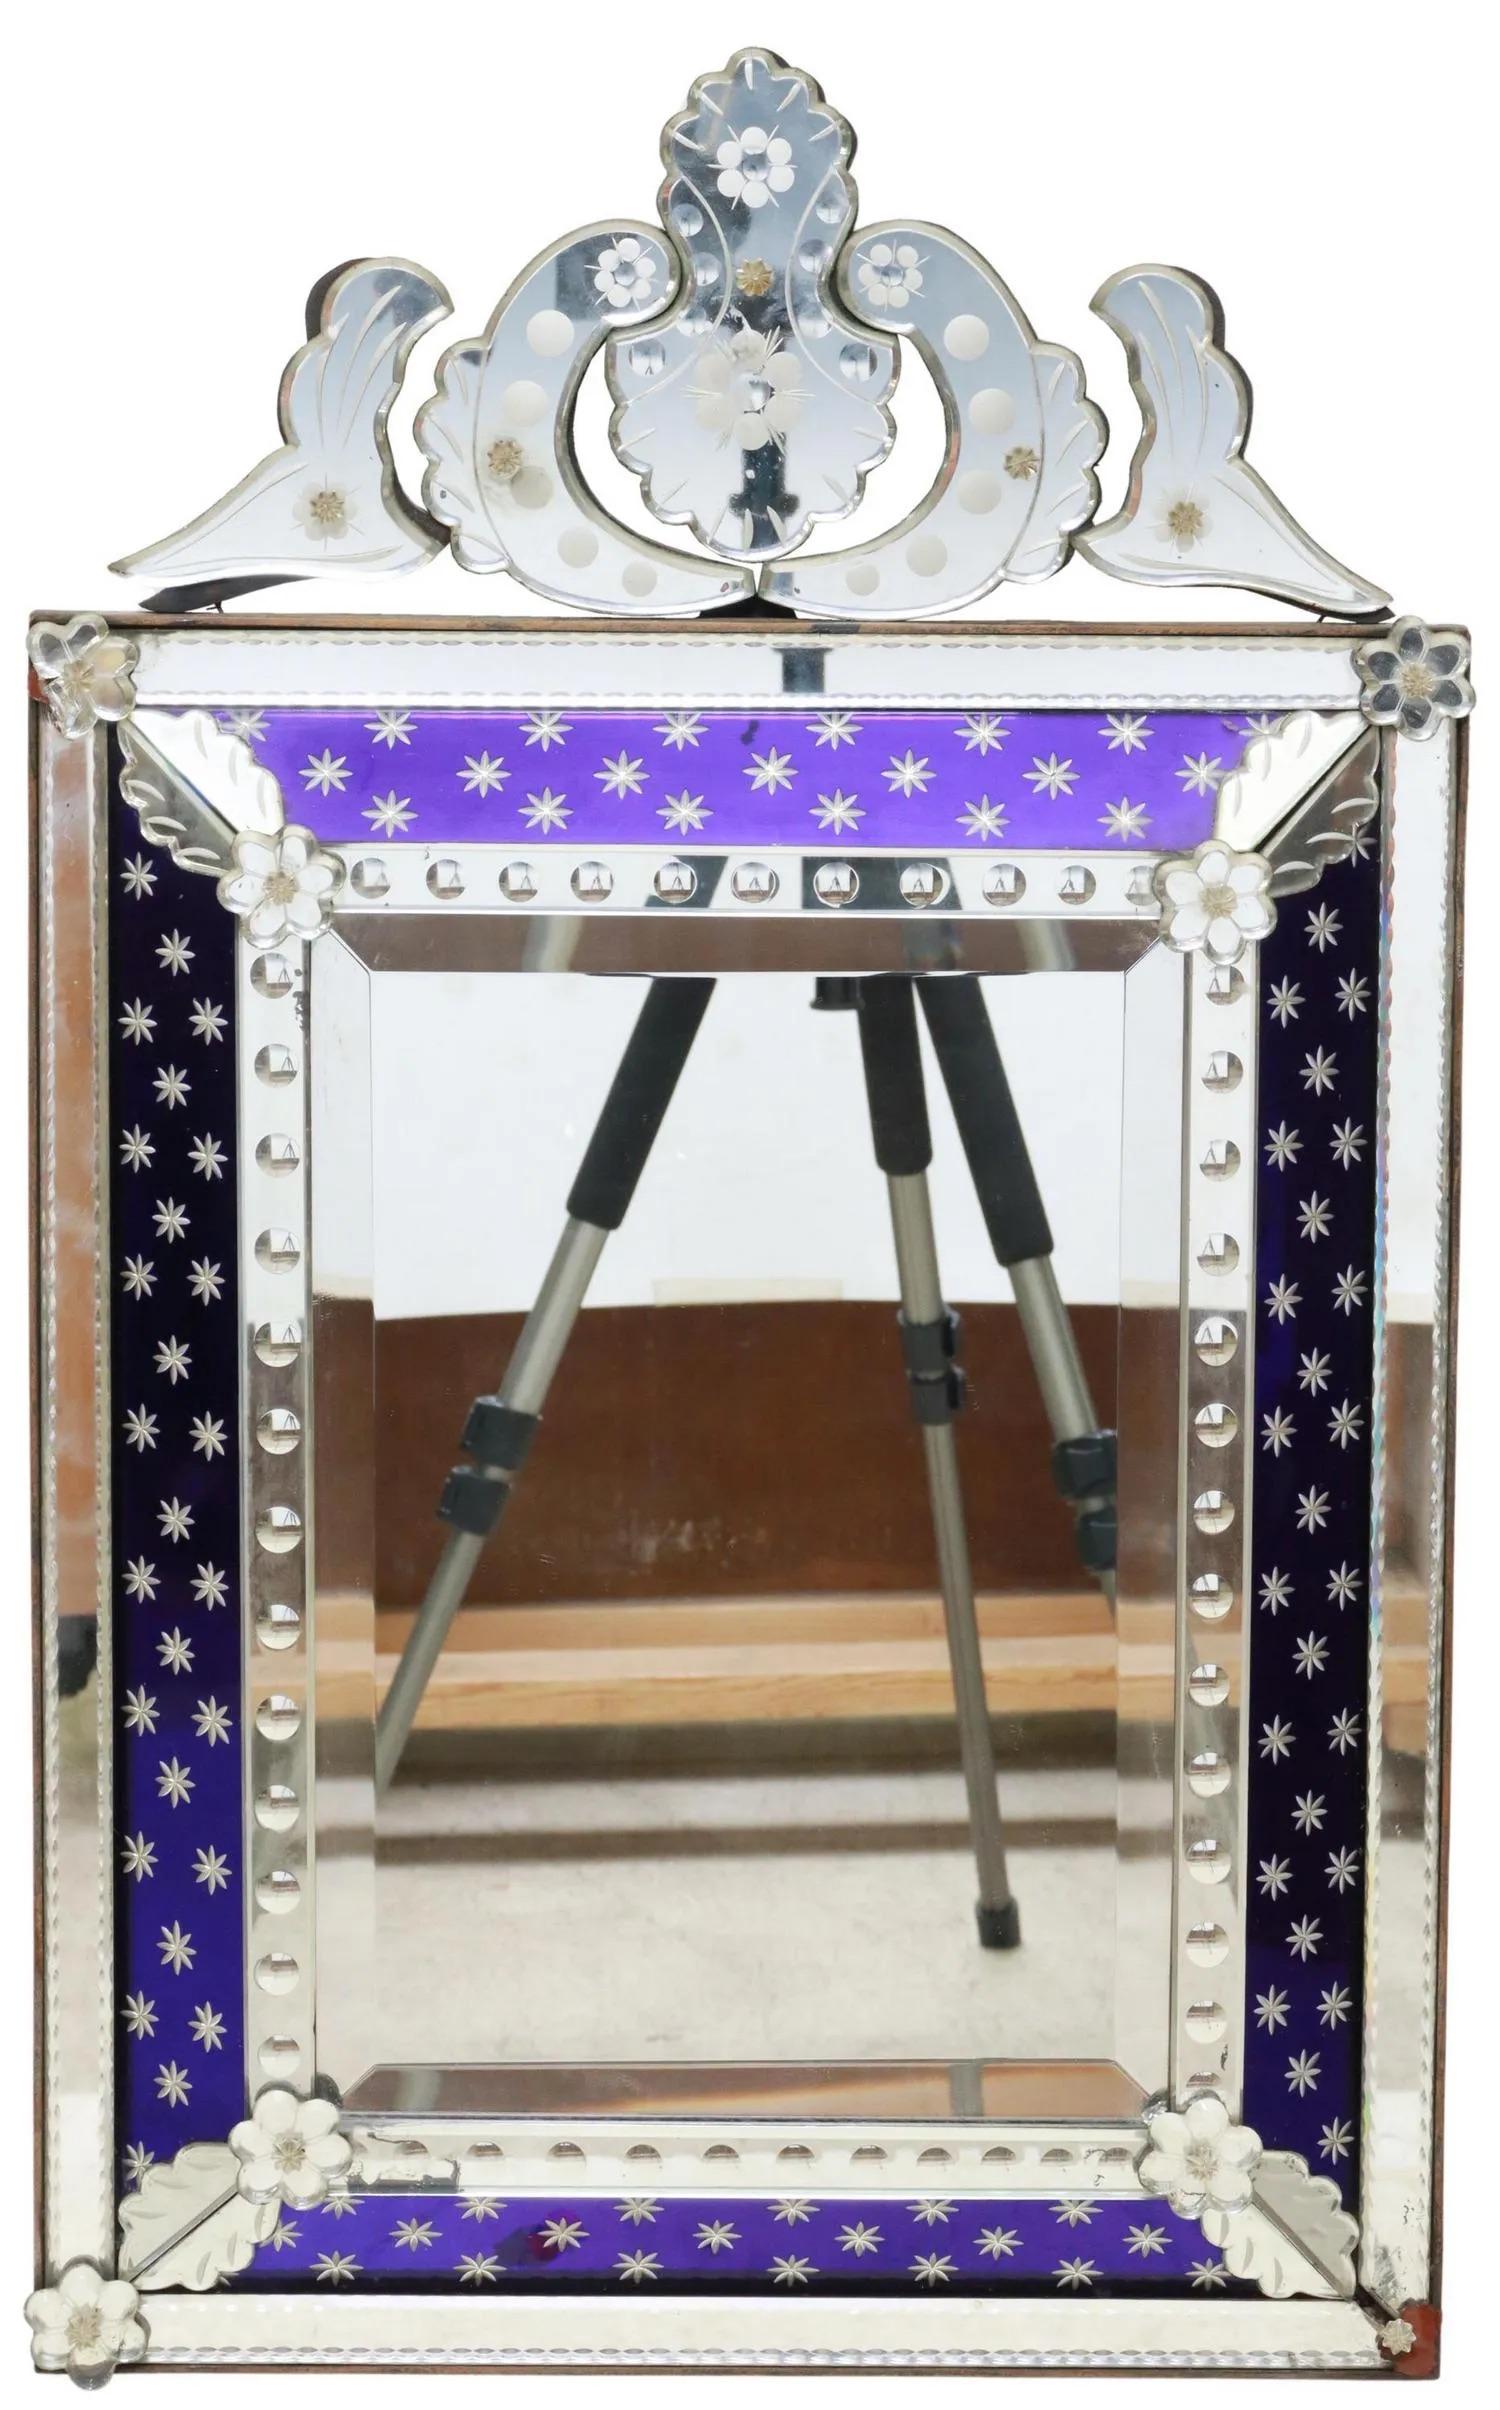 Miroir de style vénitien, fin C.C., crête gravée, bordure en verre bleu cobalt, plaque de miroir biseautée, pertes aux rosettes d'angle. 

Dimensions : environ 31 